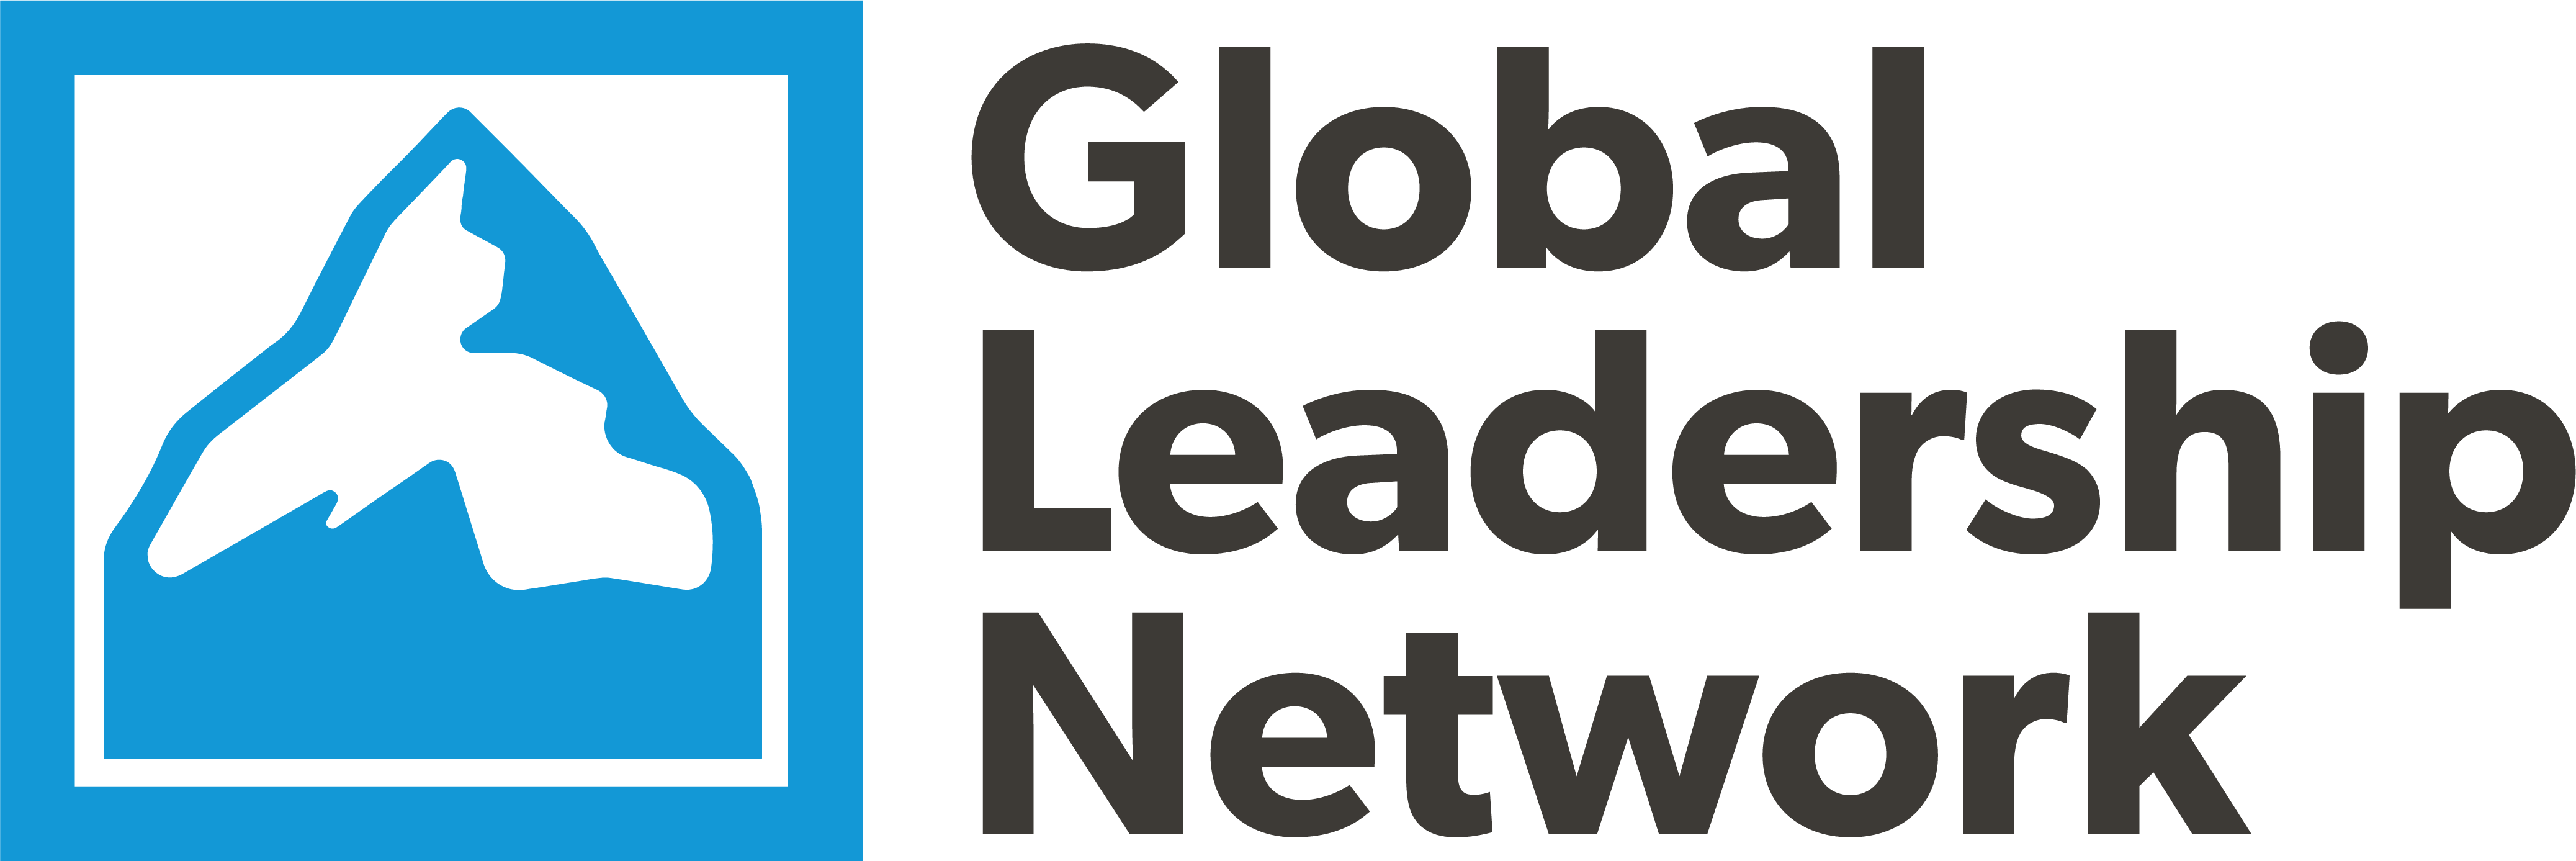 GLN logo